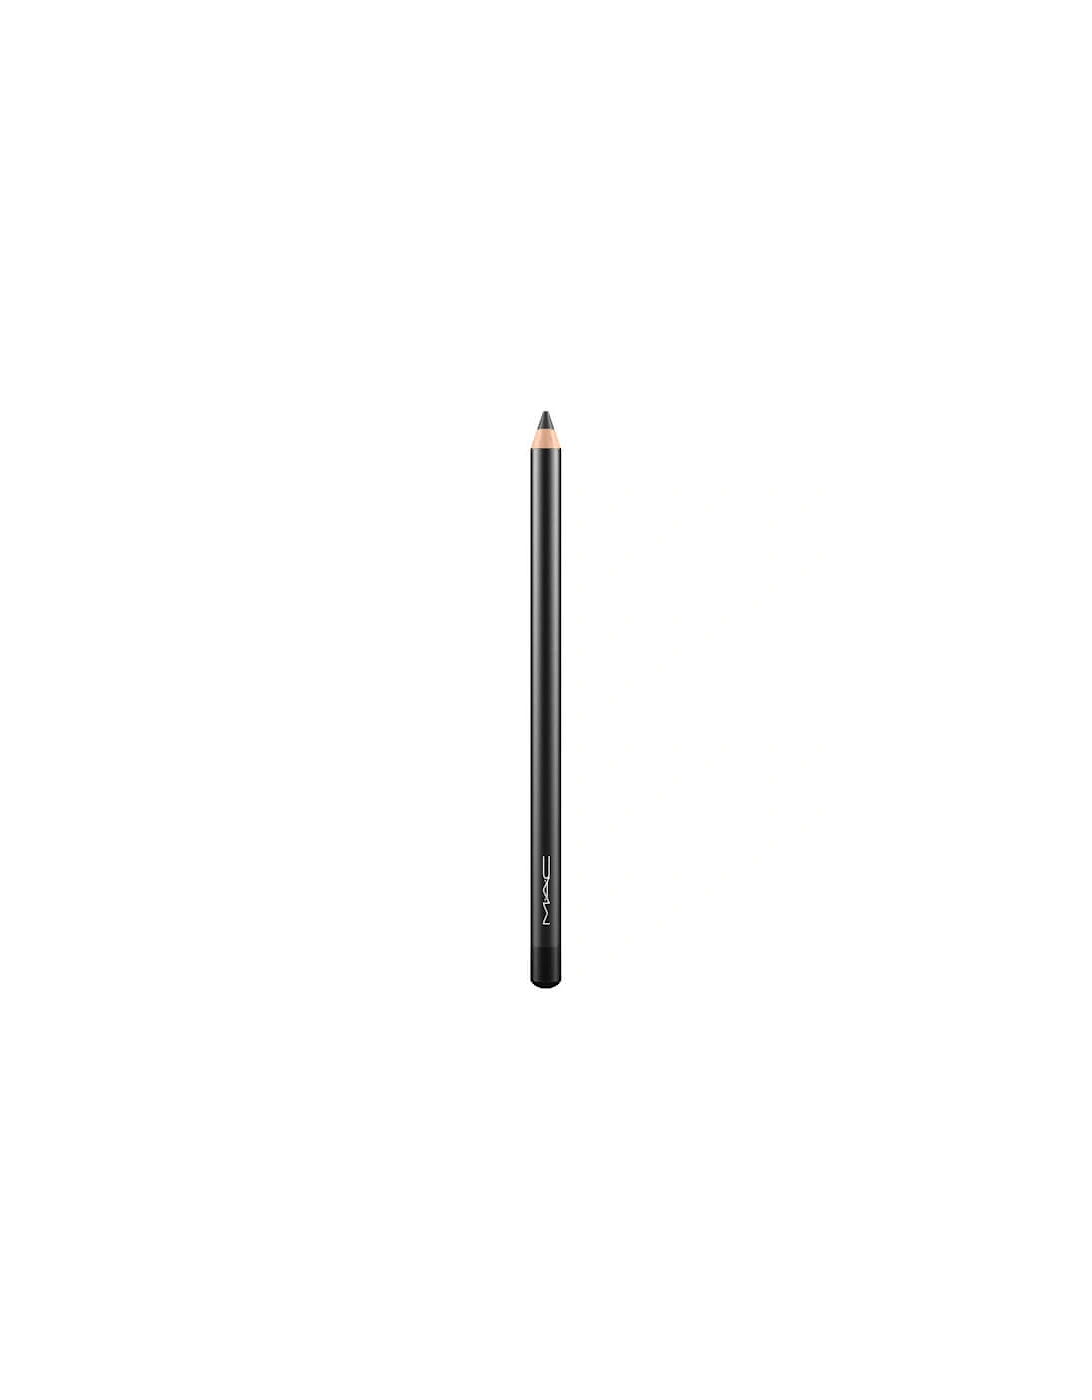 Eye Kohl Pencil Liner - Smolder, 2 of 1